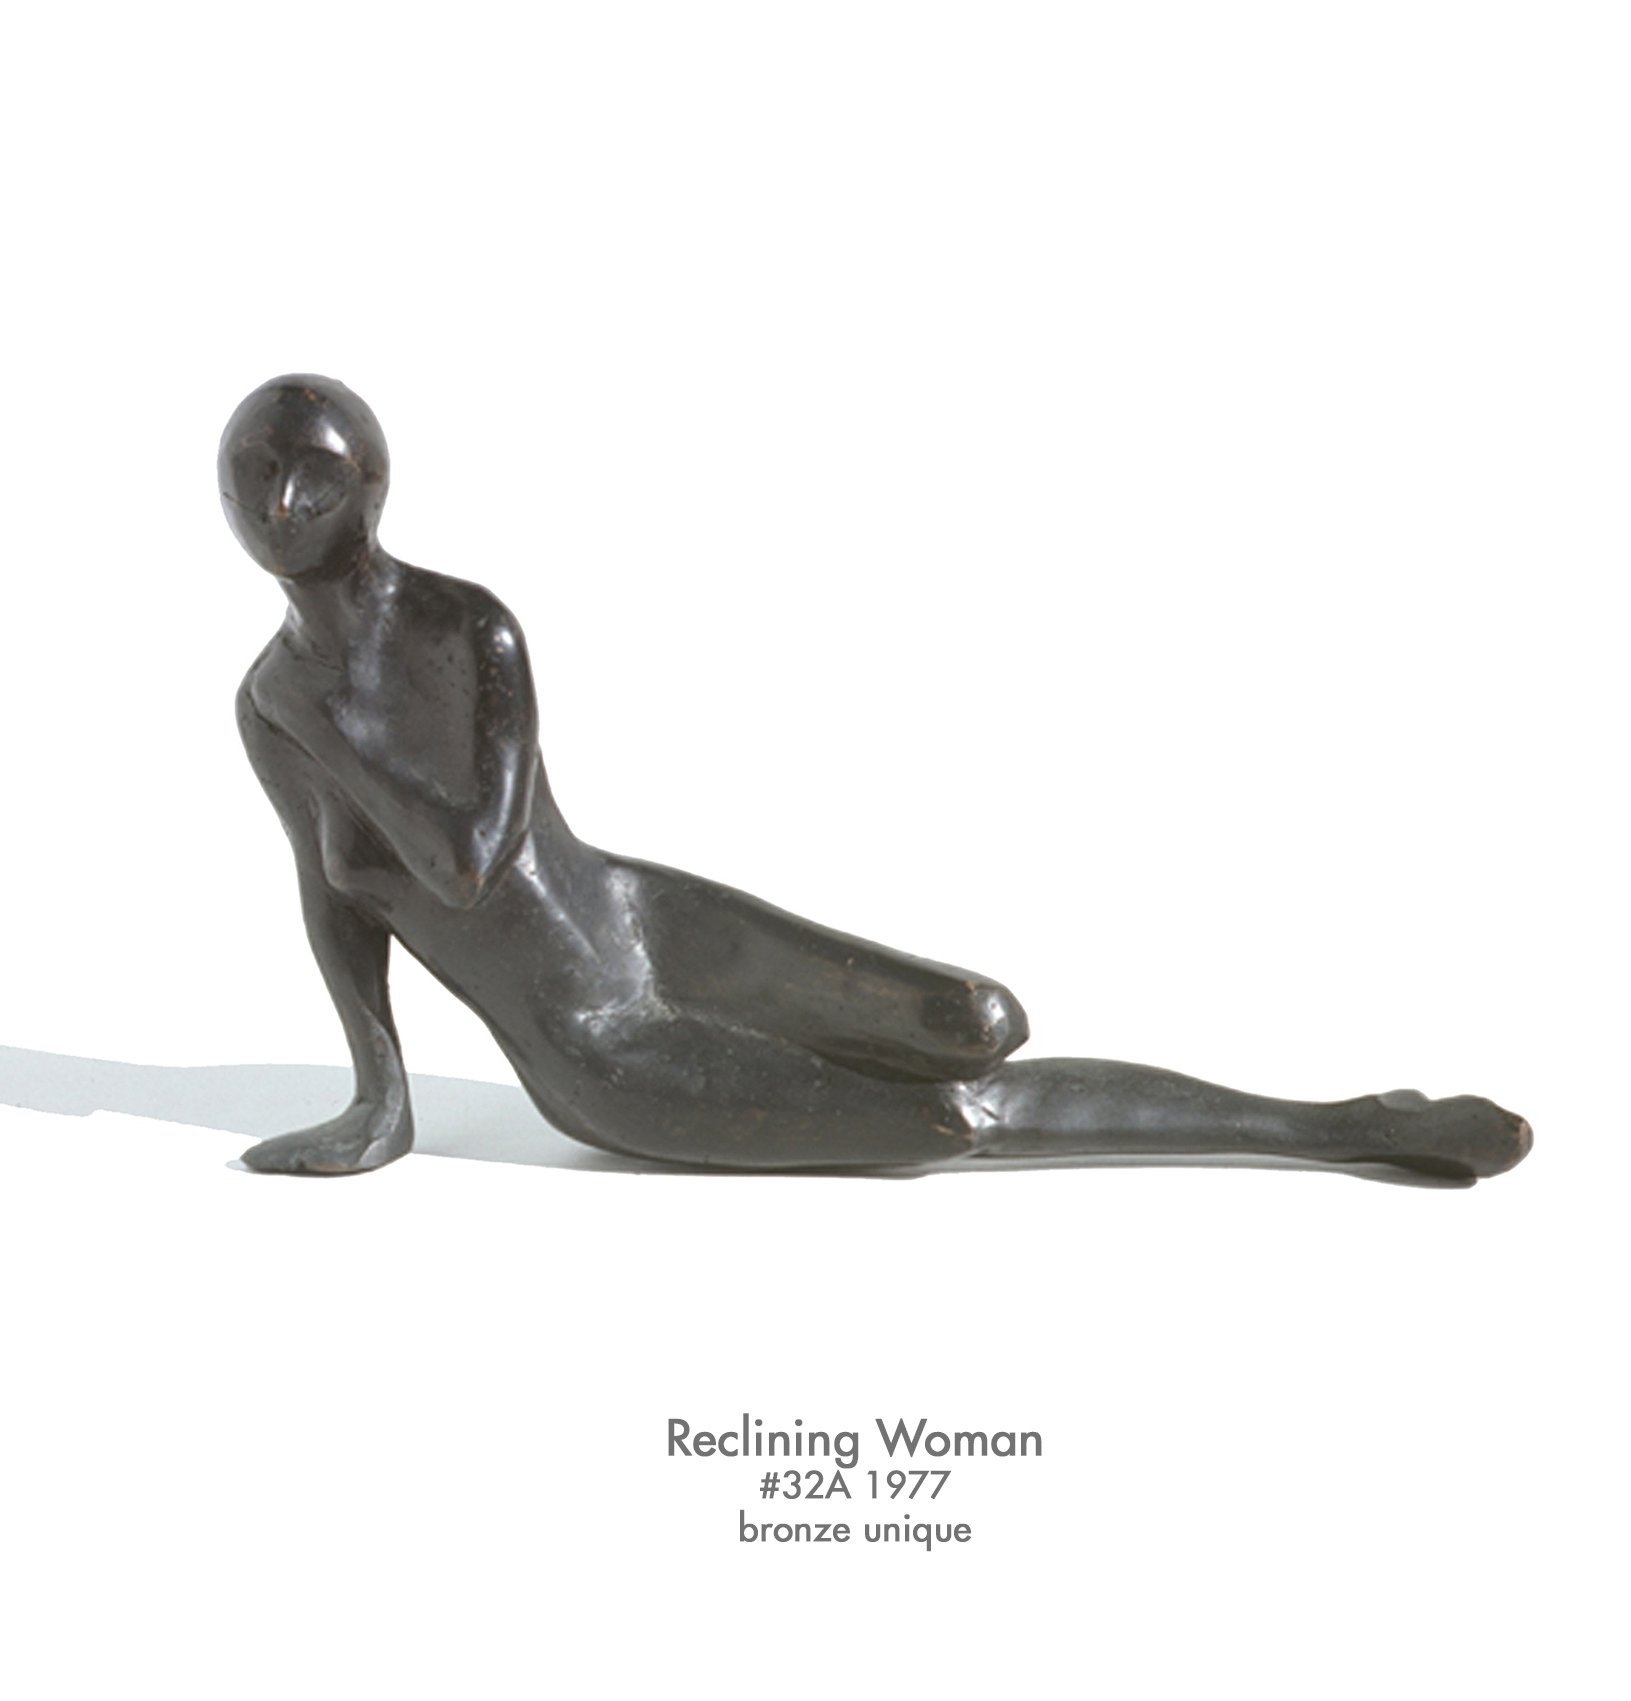 Reclining Woman, 1977, bronze, #32A